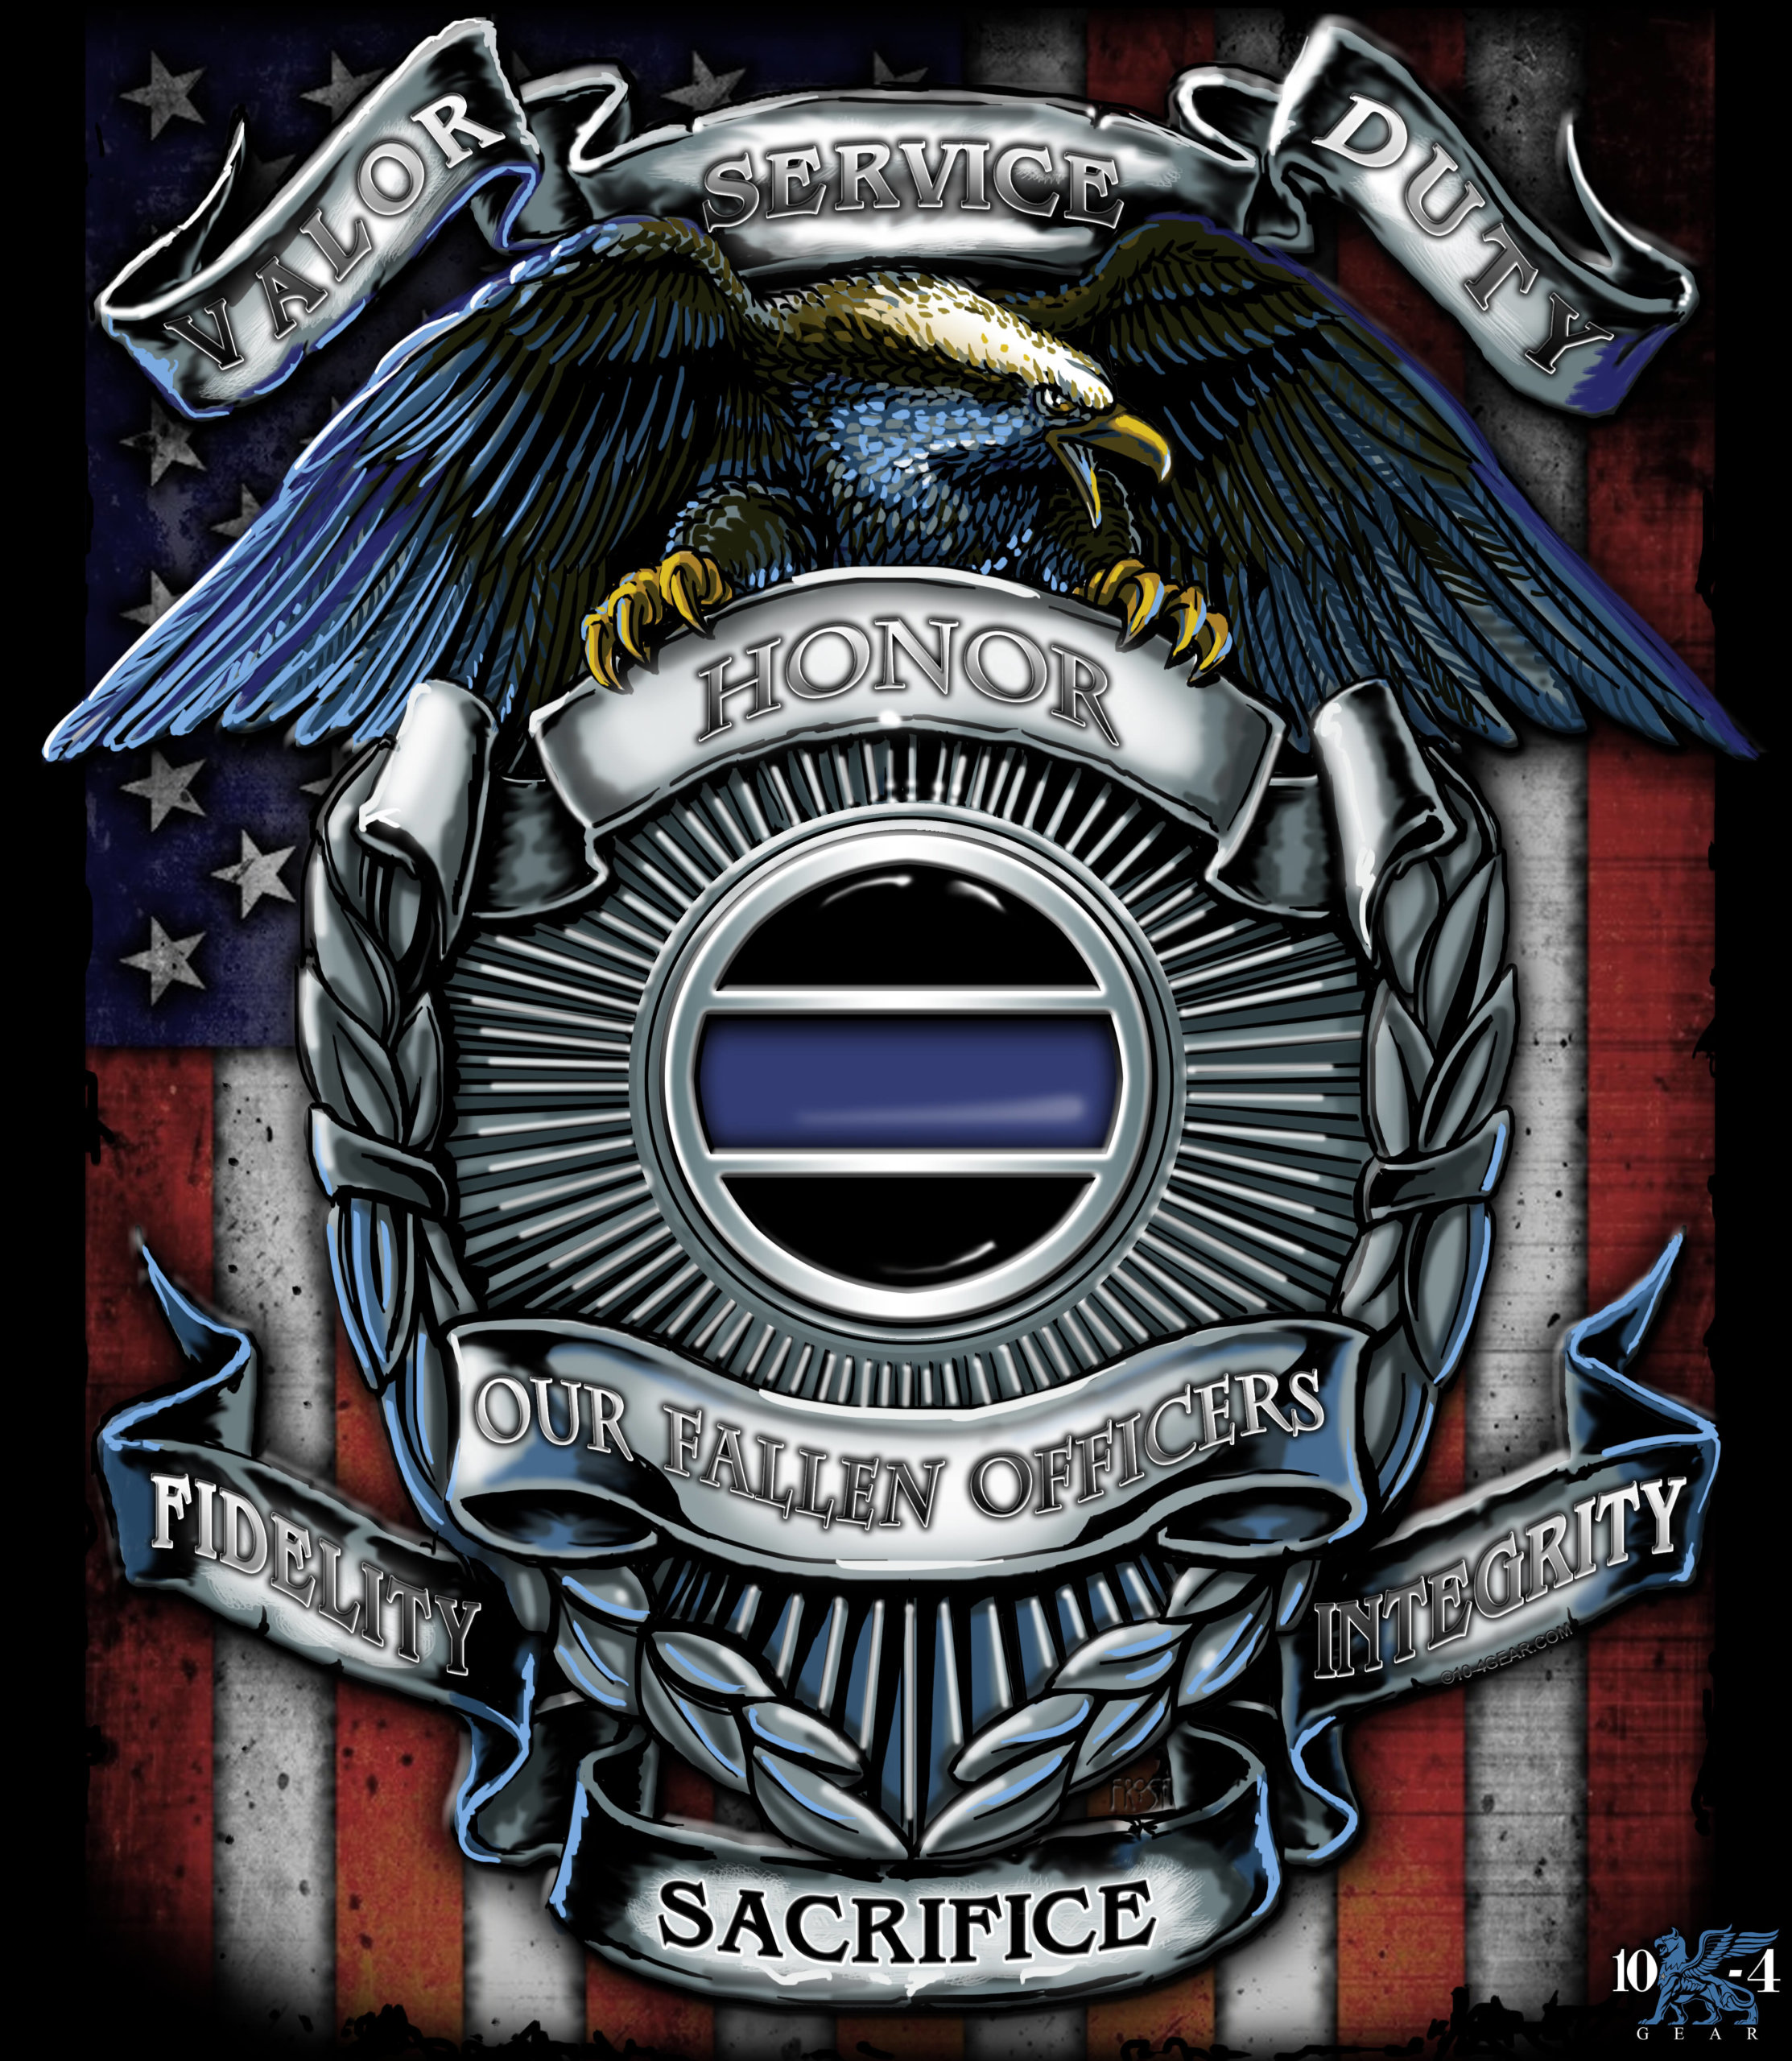 fallen police officer symbol